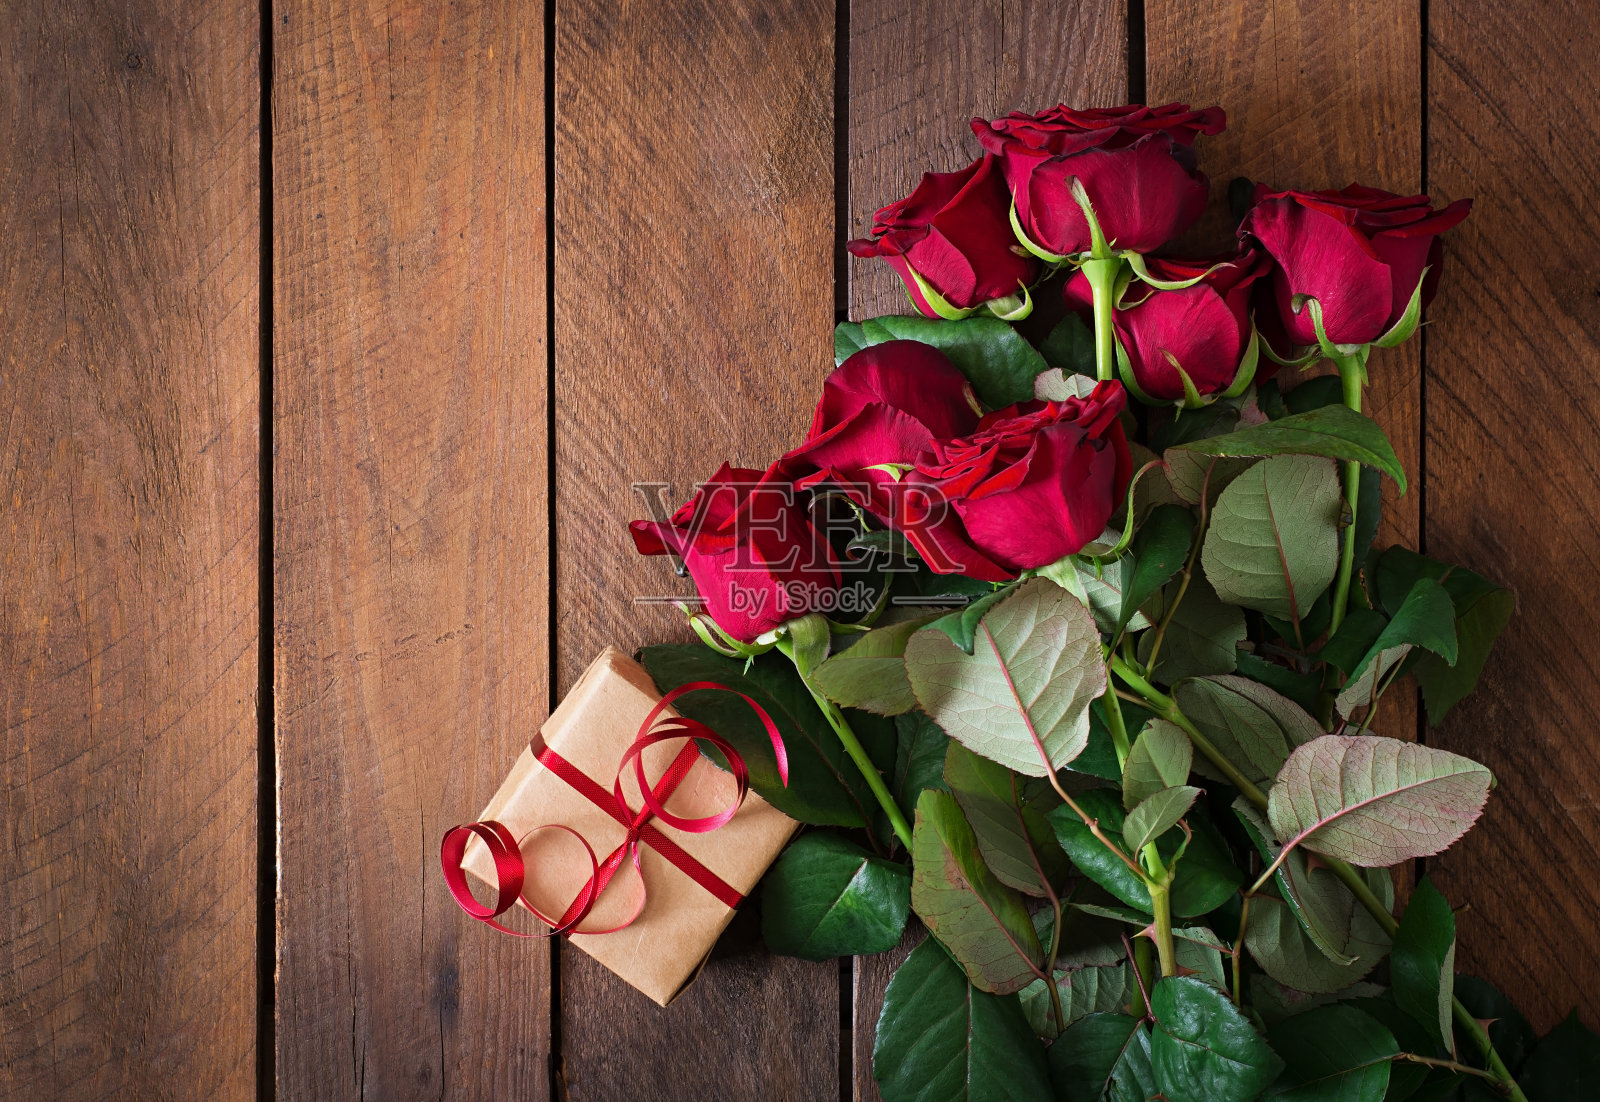 深色木质背景上的一束红玫瑰照片摄影图片